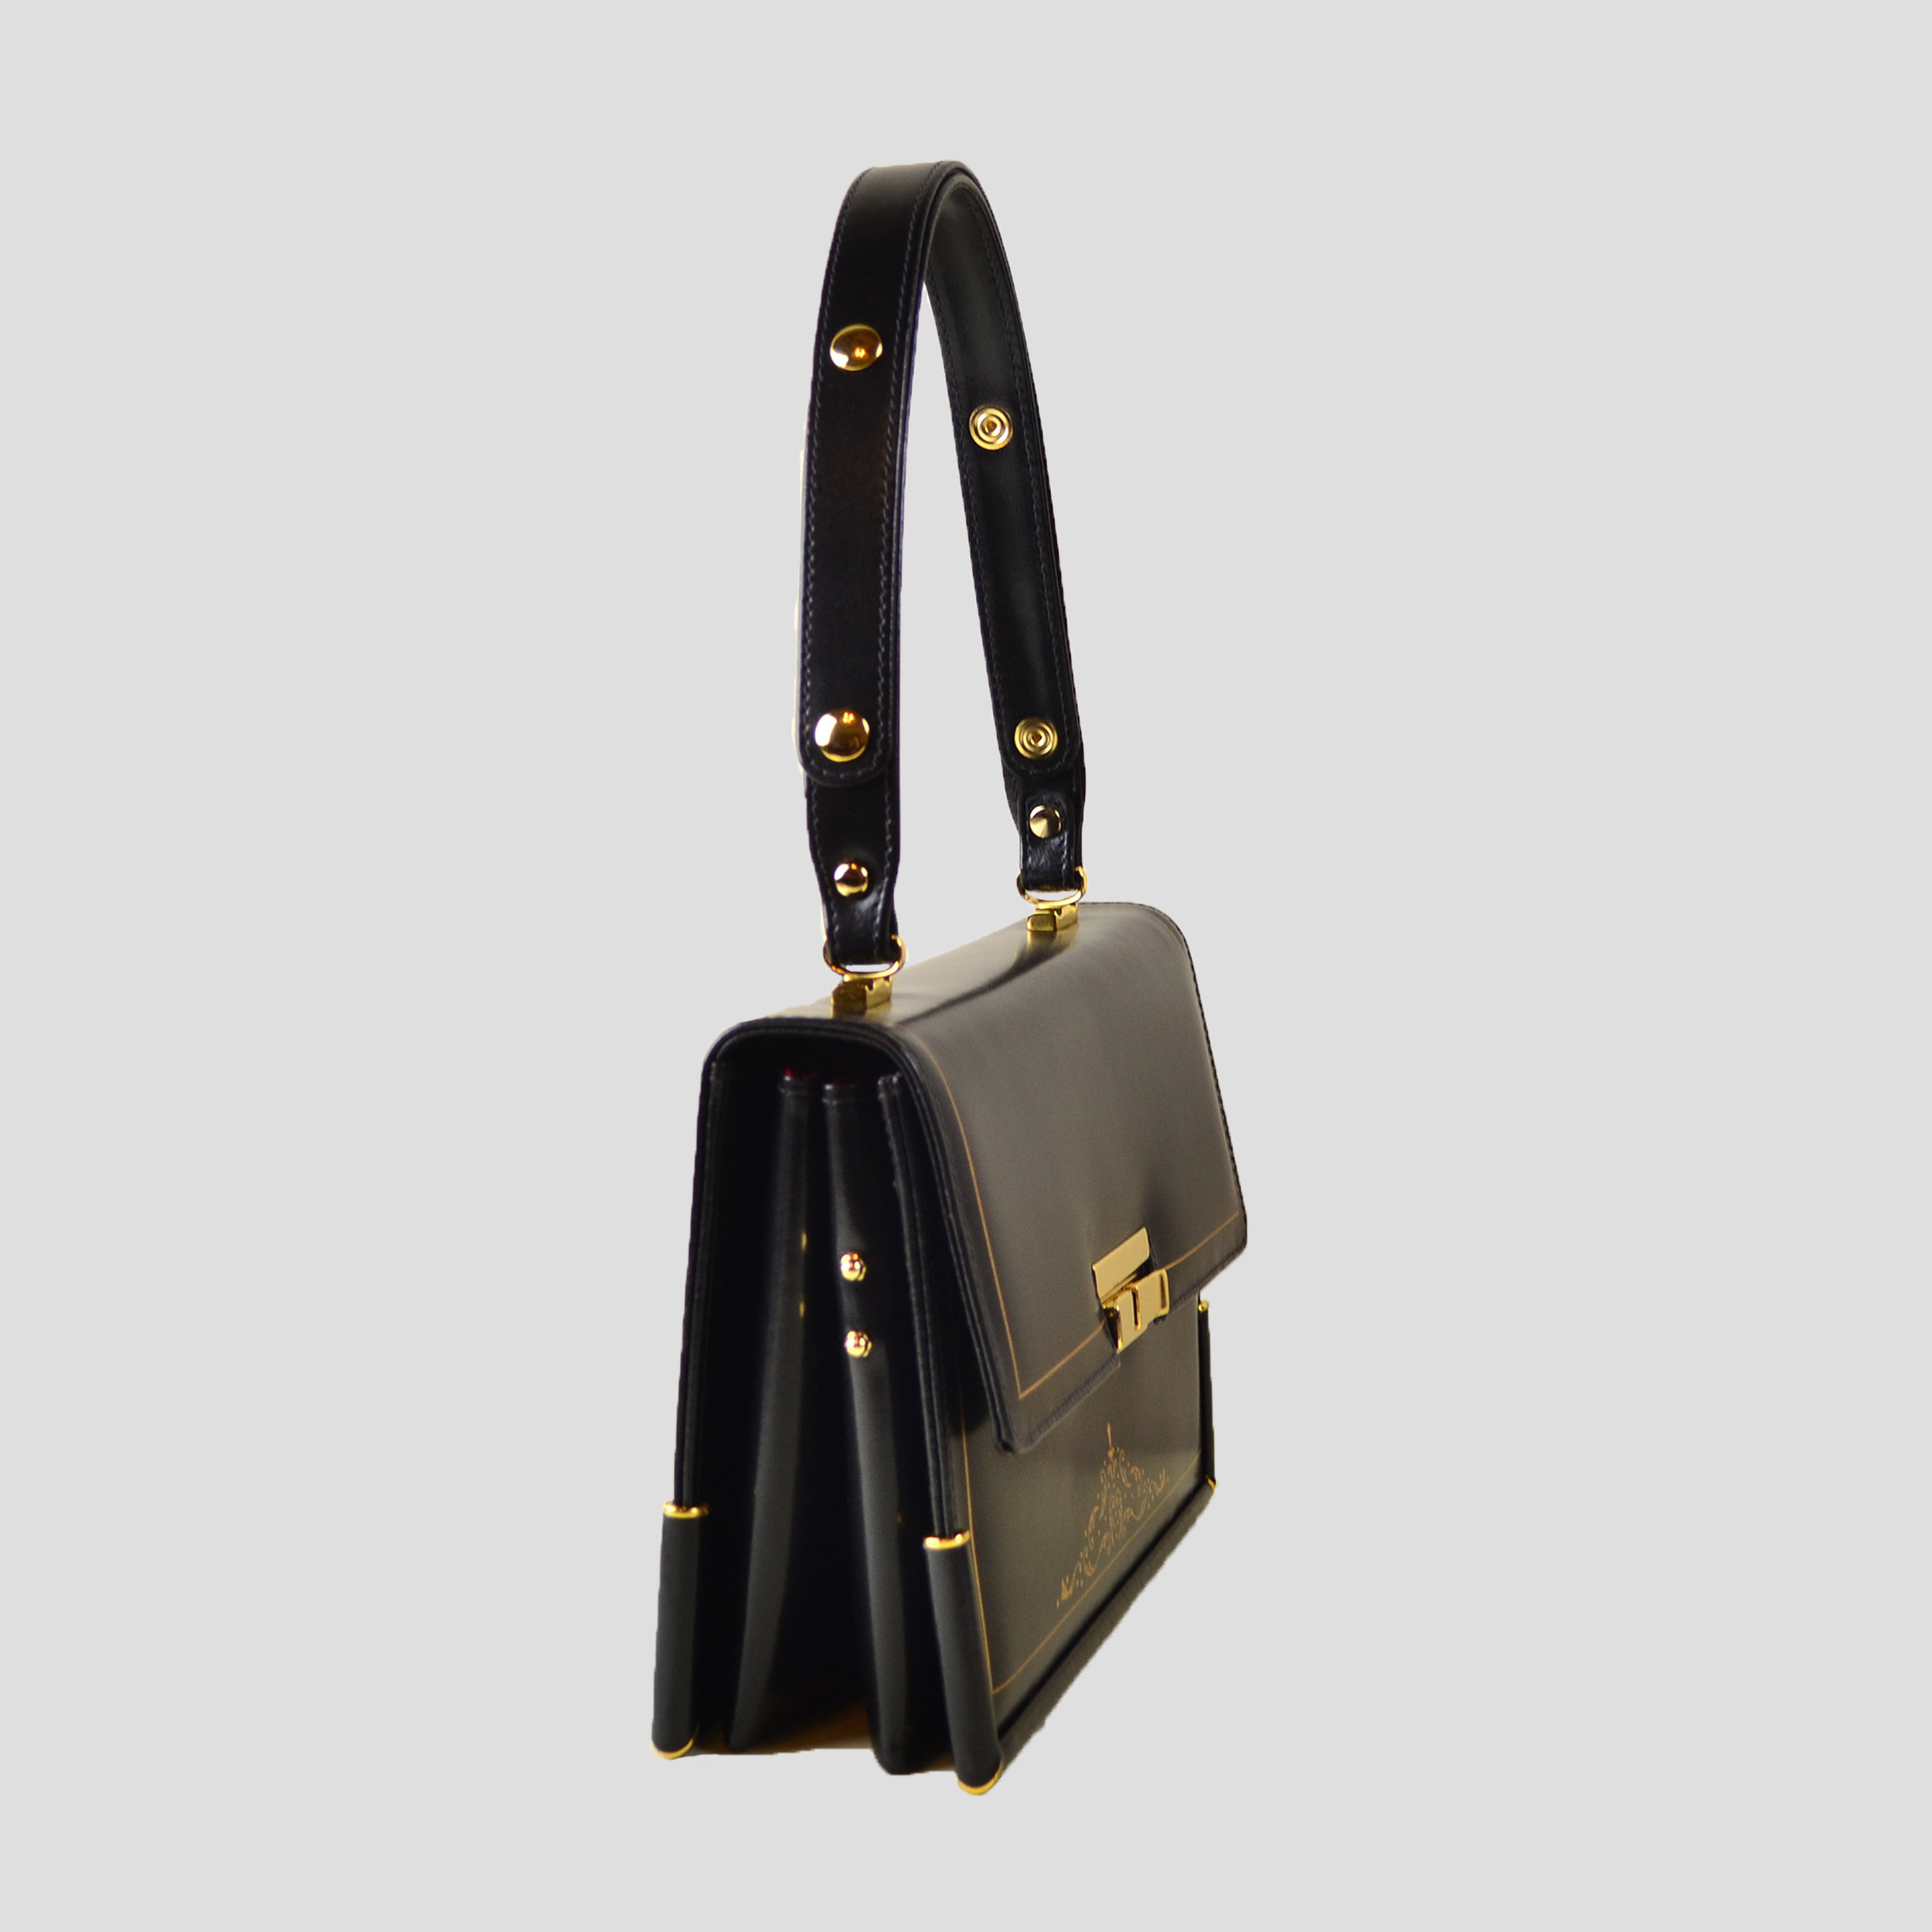 Grace Kelly Inspired This Hermes Handbag - YouTube